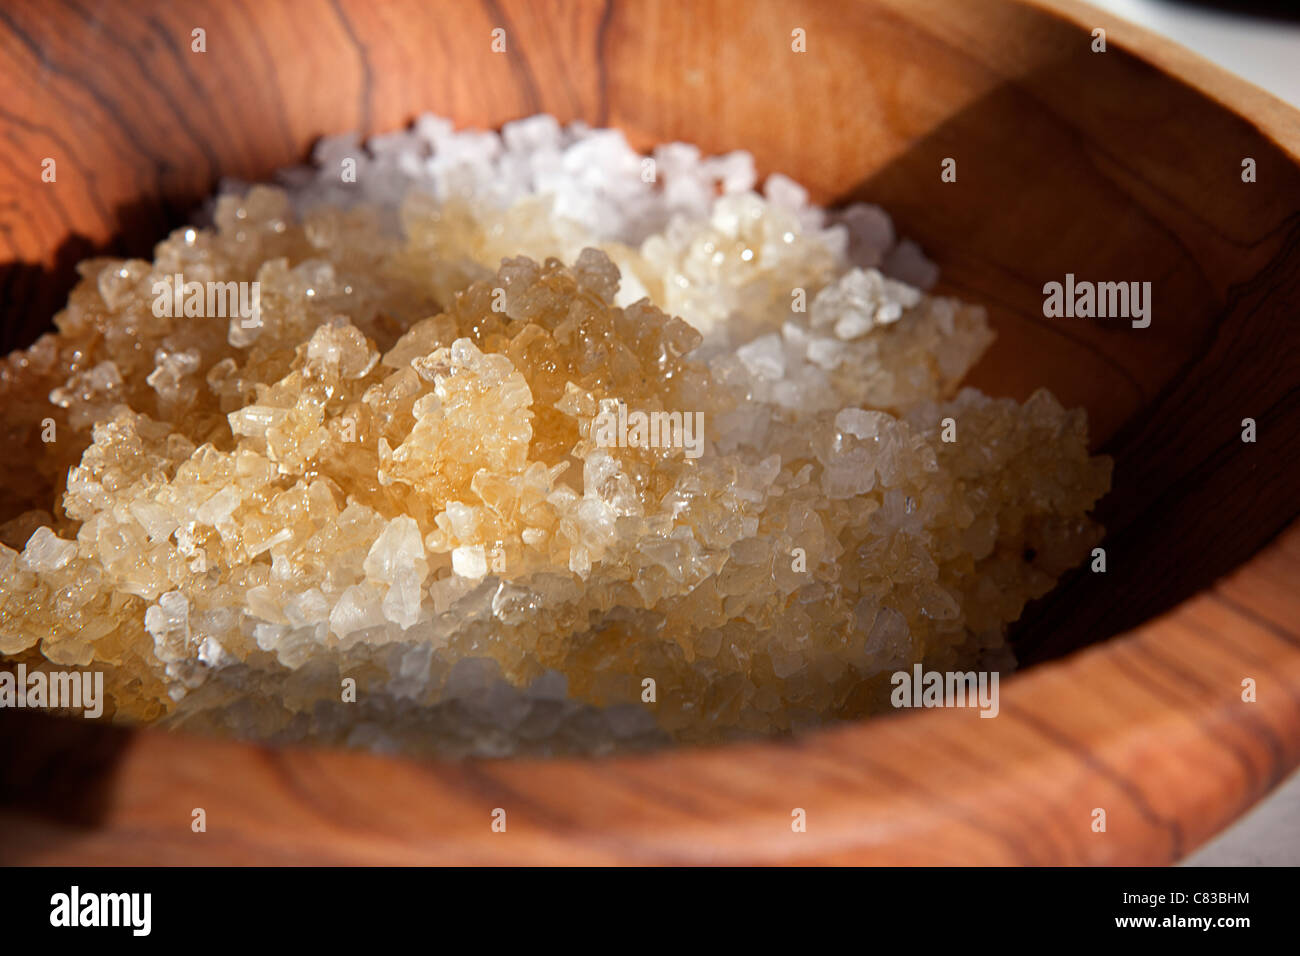 Close up of bowl of sugar Stock Photo